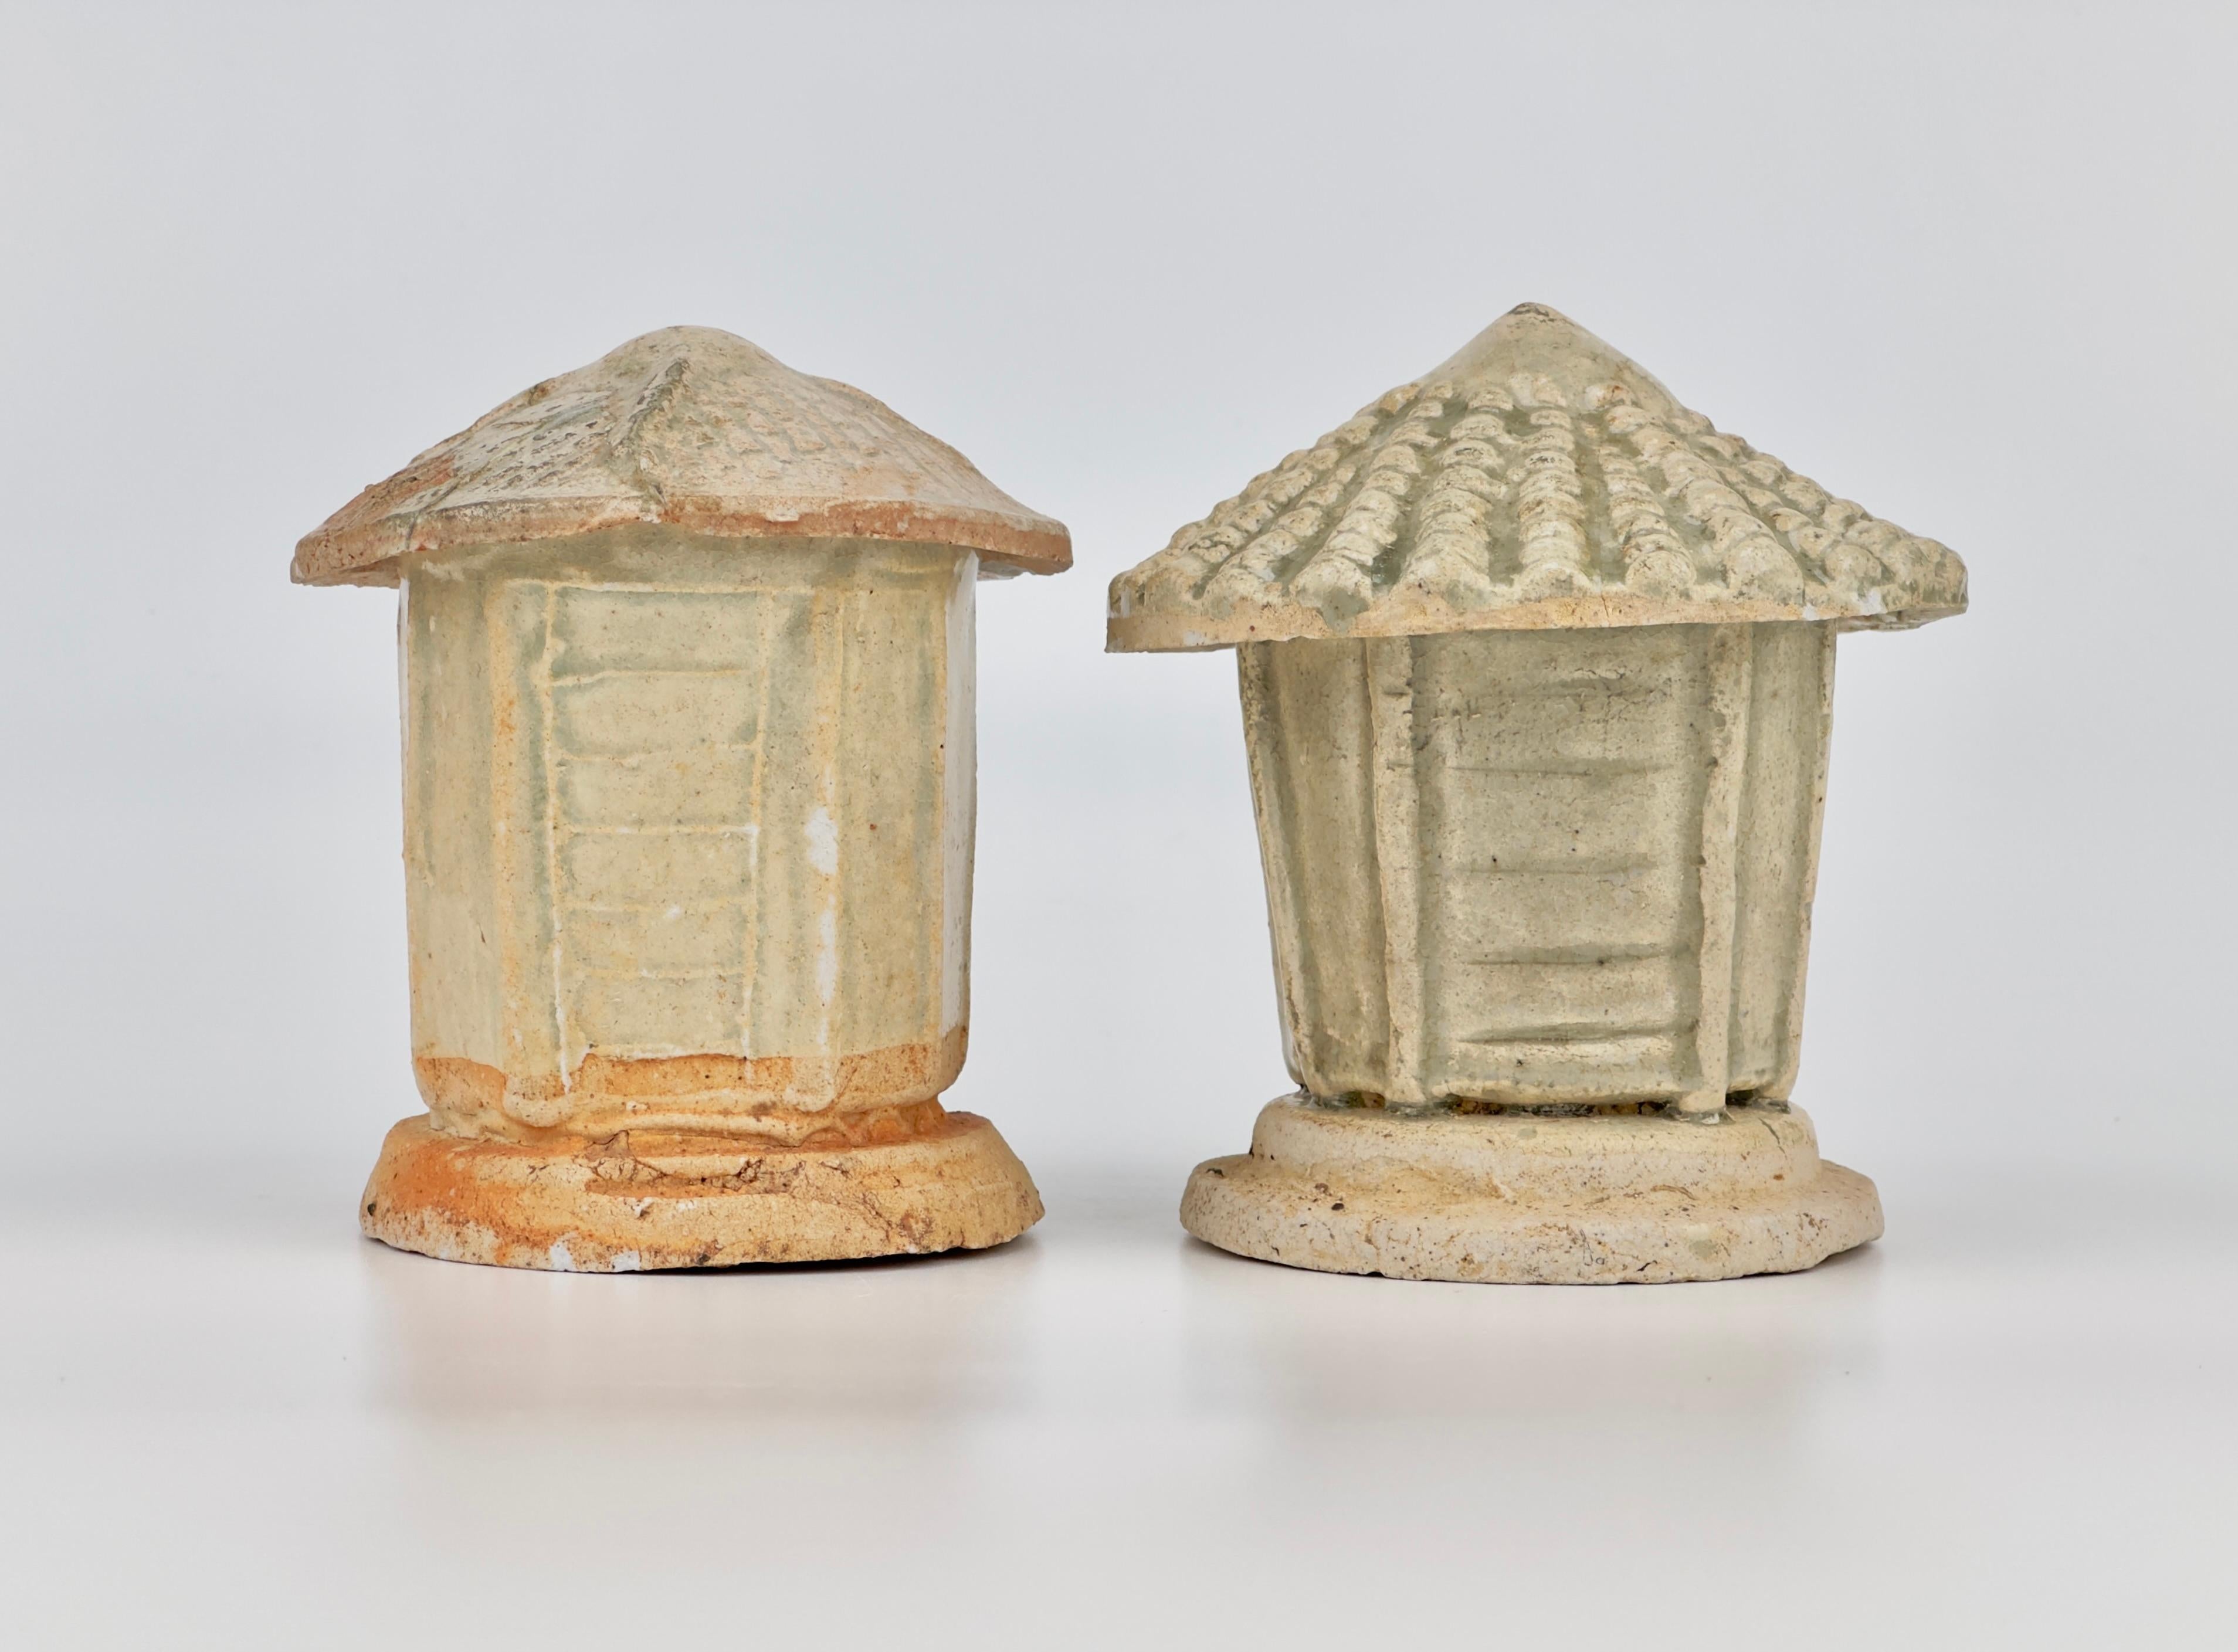 Zwei Porzellanmodelle mit Kornspeicher. Ostasien, Diese Keramikdarstellung eines Getreidespeichers steht auf einem geschichteten Sockel, der von einem konischen Deckel gekrönt wird, der gleichzeitig als Dach dient. Das Ganze ist mit einer für die